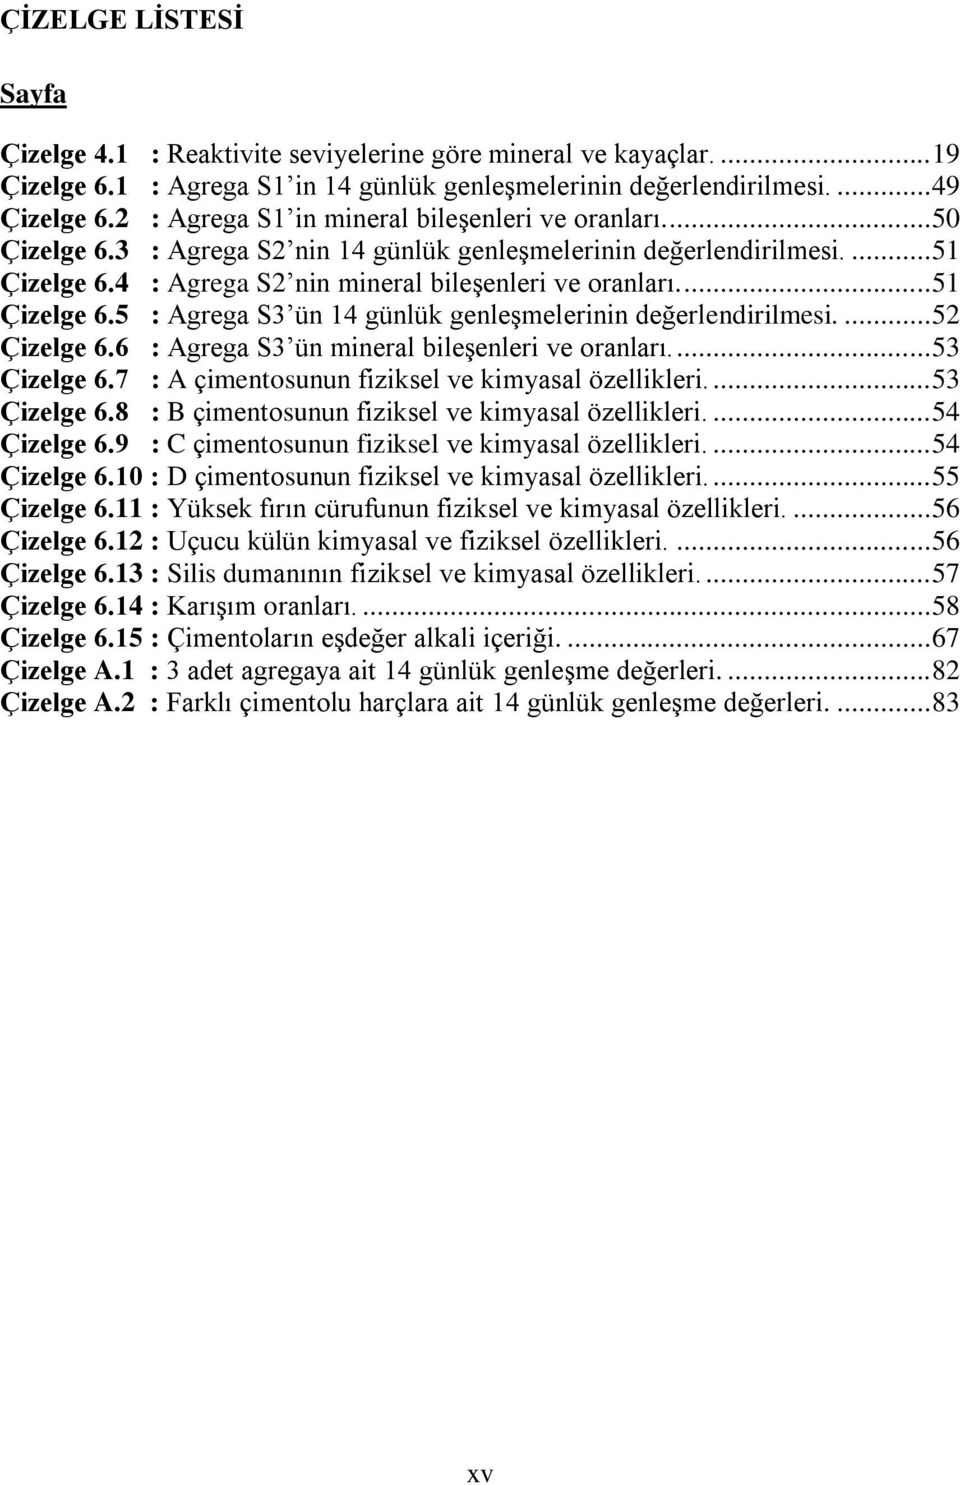 ... 51 Çizelge 6.5 : Agrega S3 ün 14 günlük genleşmelerinin değerlendirilmesi.... 52 Çizelge 6.6 : Agrega S3 ün mineral bileşenleri ve oranları.... 53 Çizelge 6.